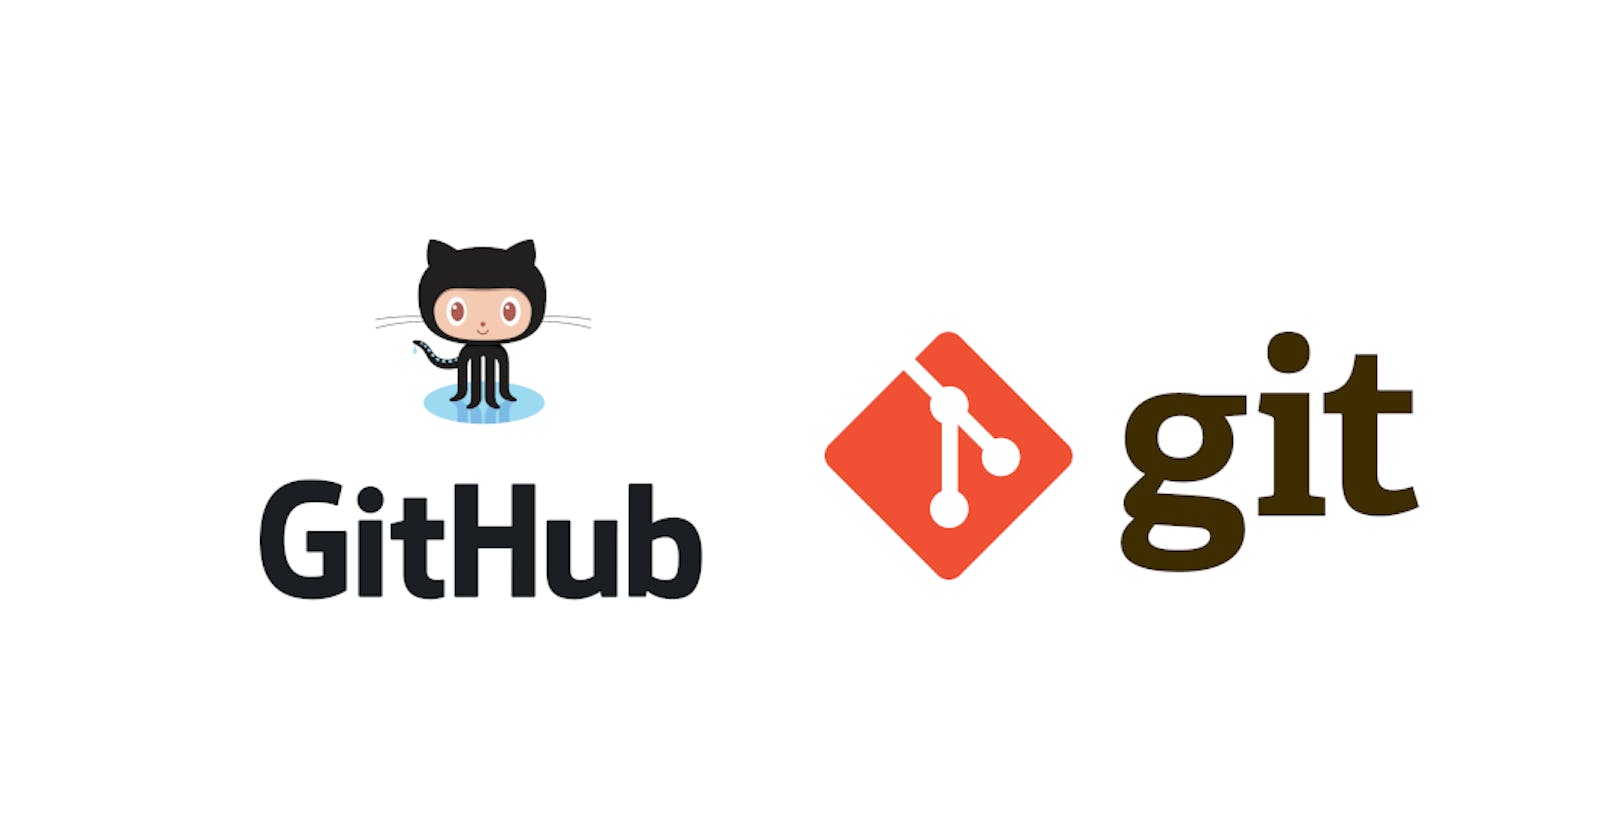 A world of Git and GitHub